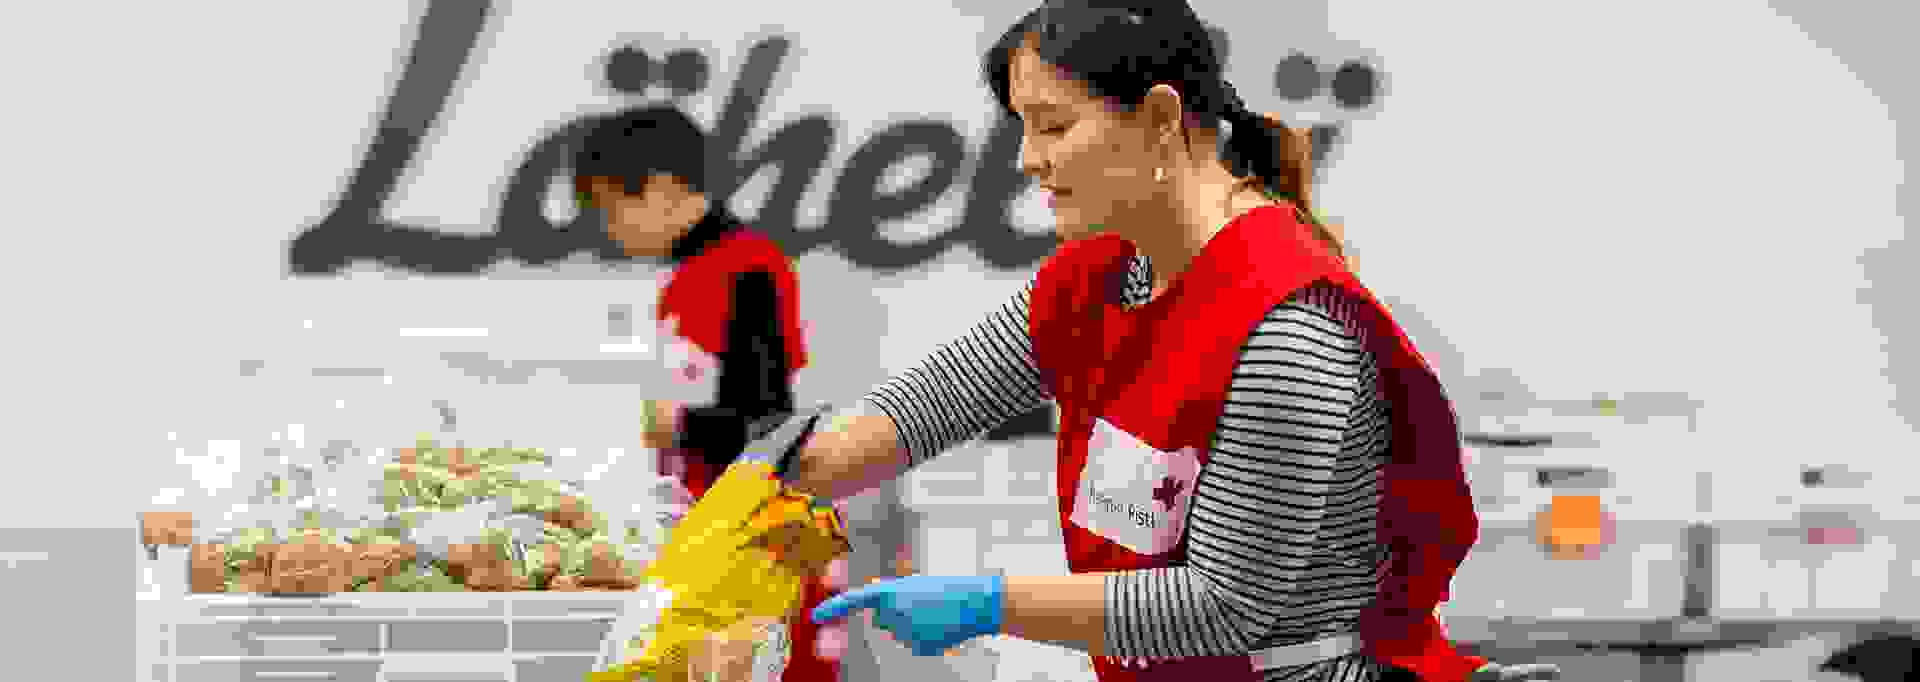 Punaisen Ristin vapaaehtoiset jakavat ruokakasseja.